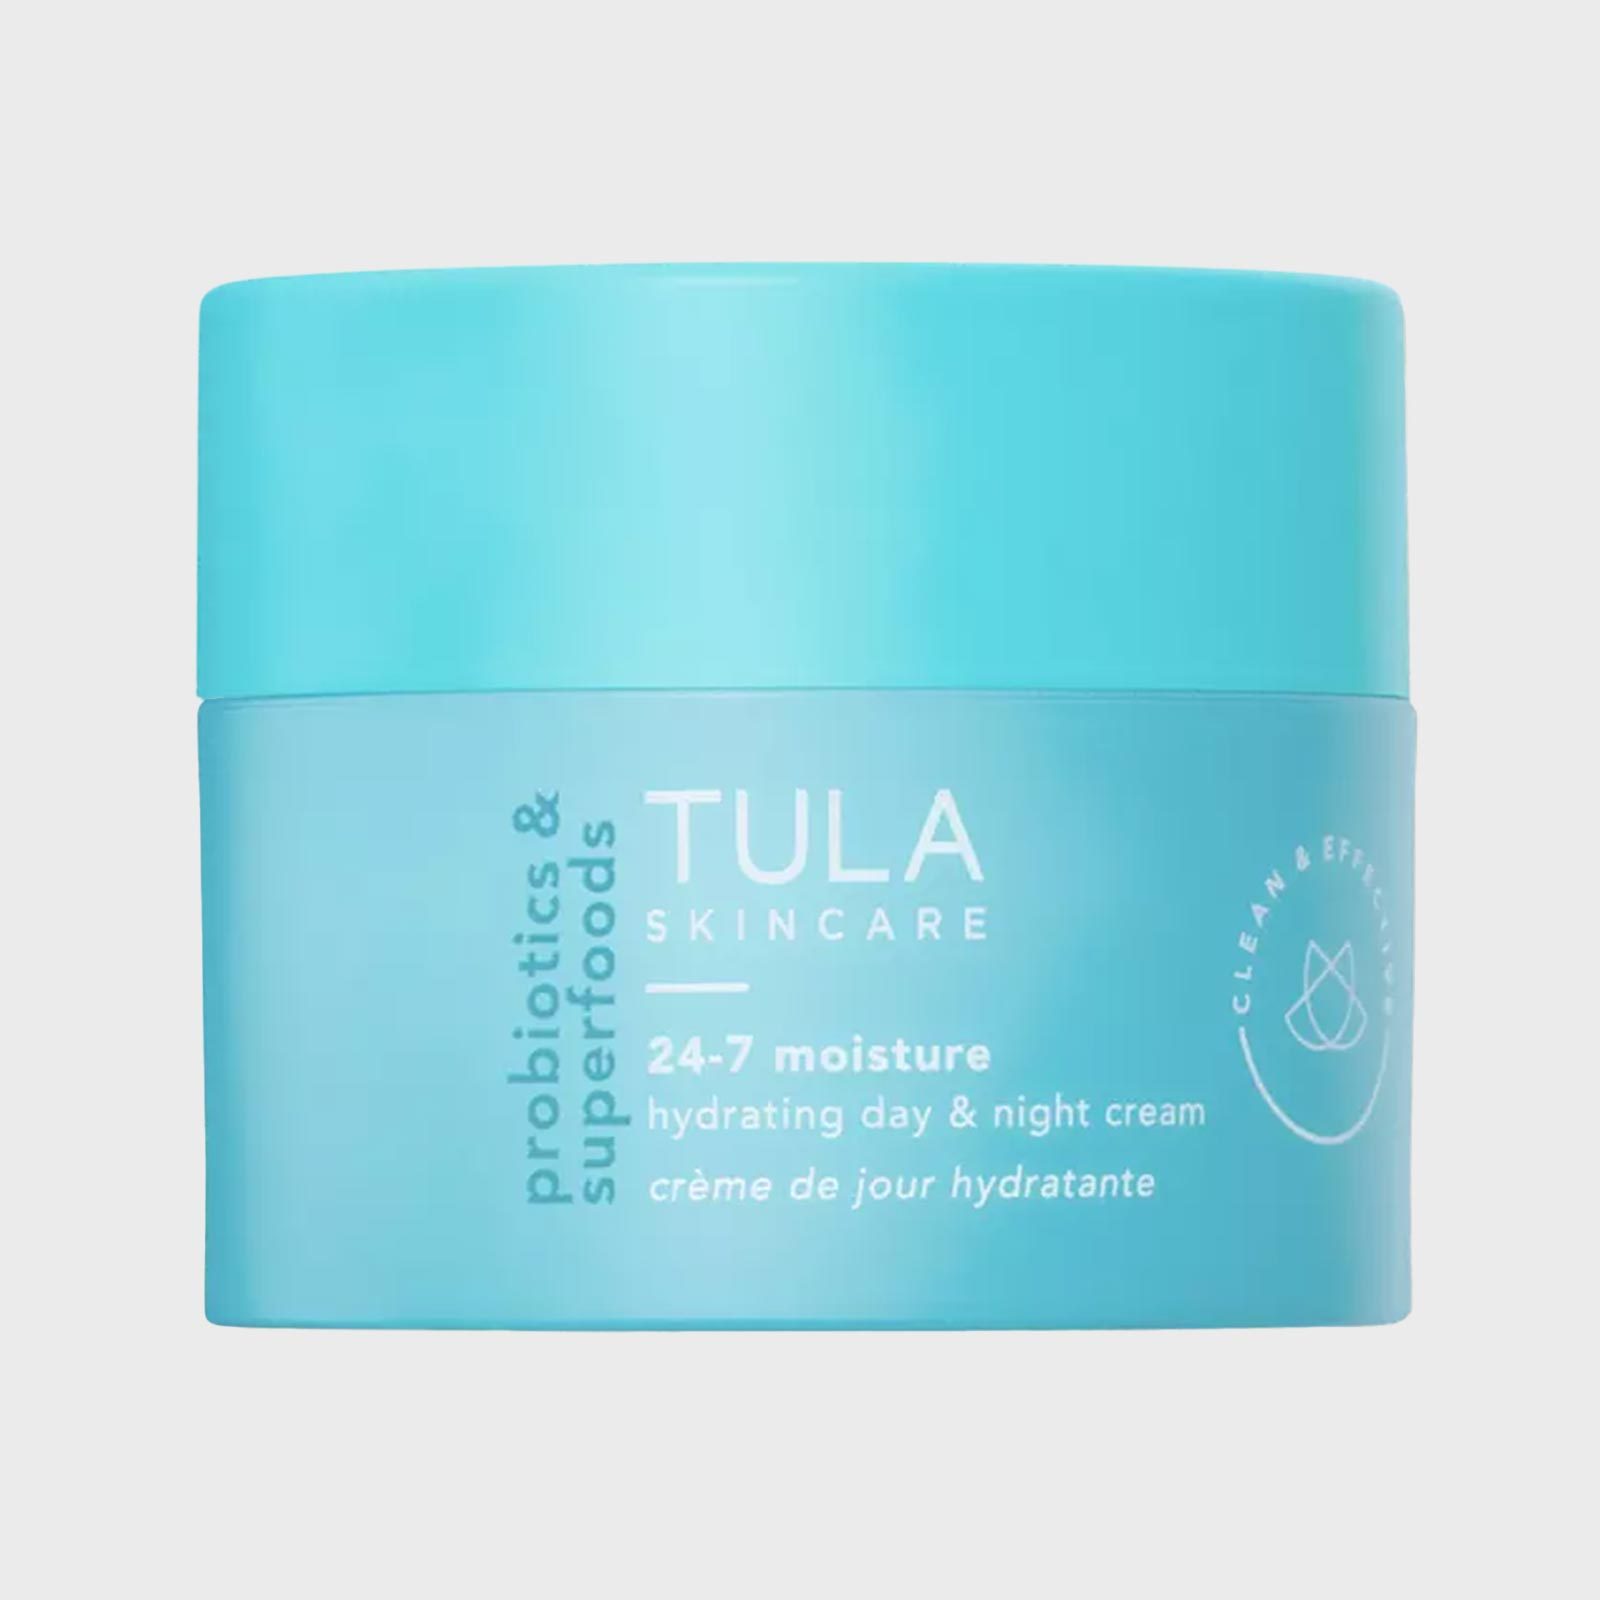 Rd Ecomm Tula Skin Cream Via Ulta.com